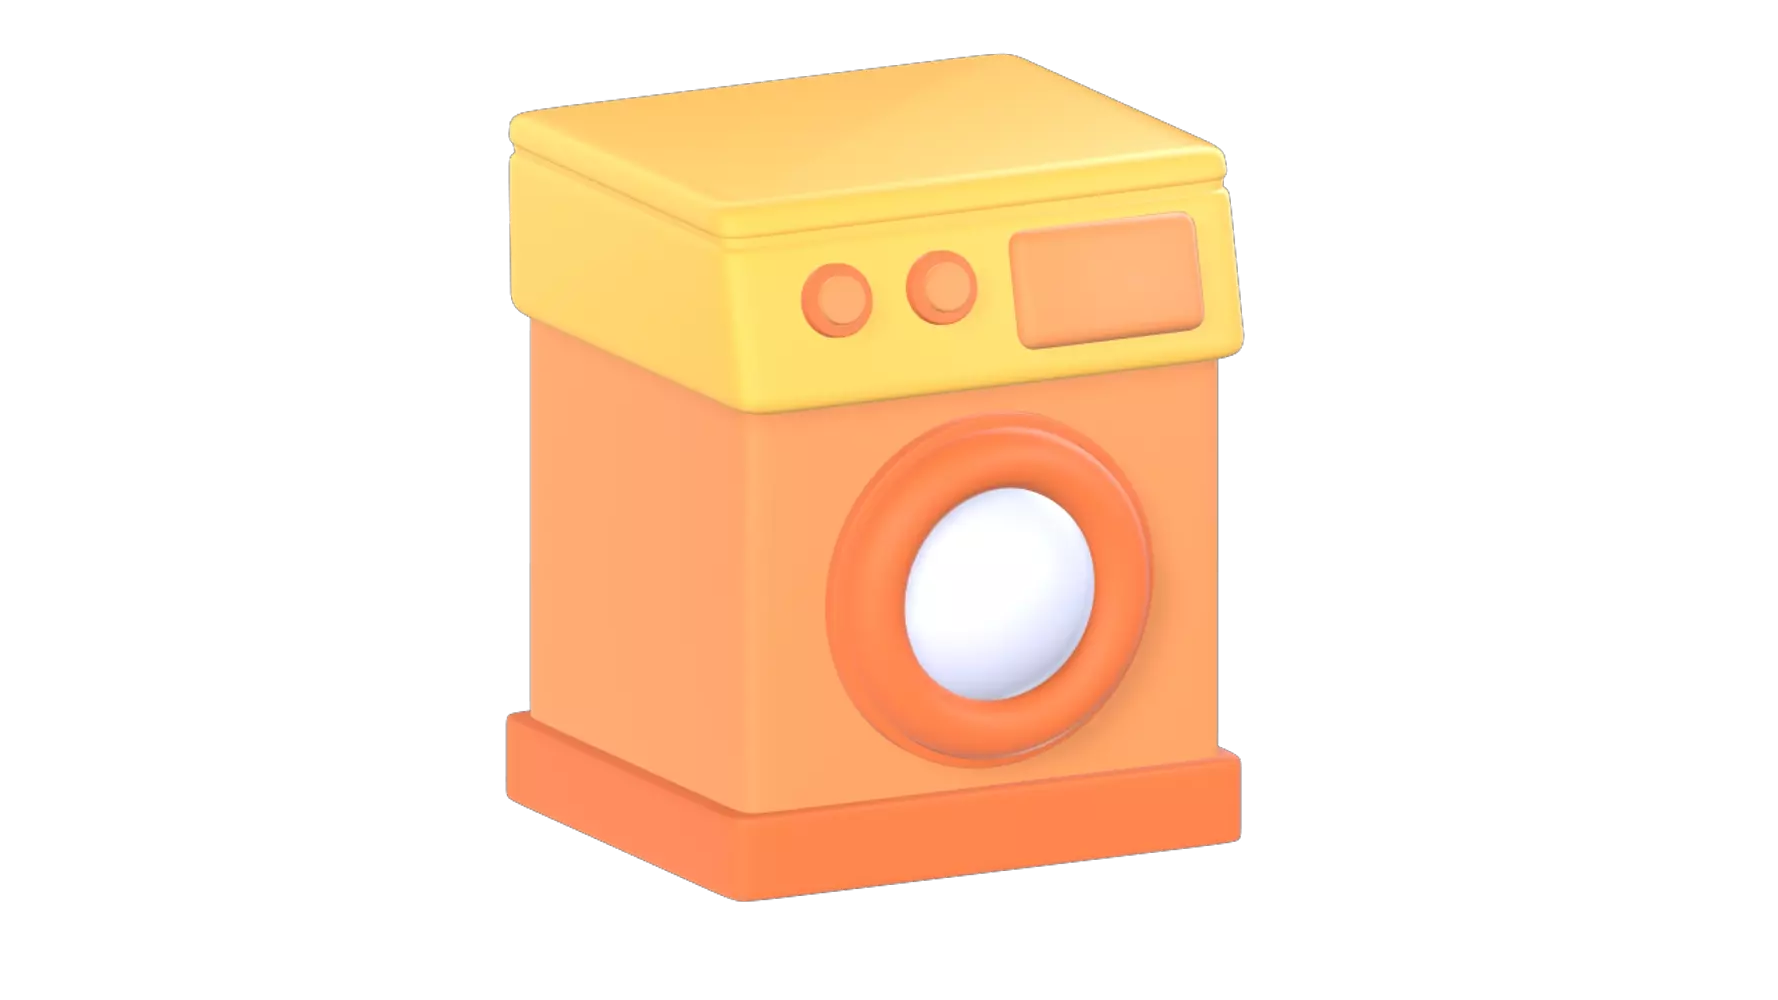 Washing Machine 3D Graphic